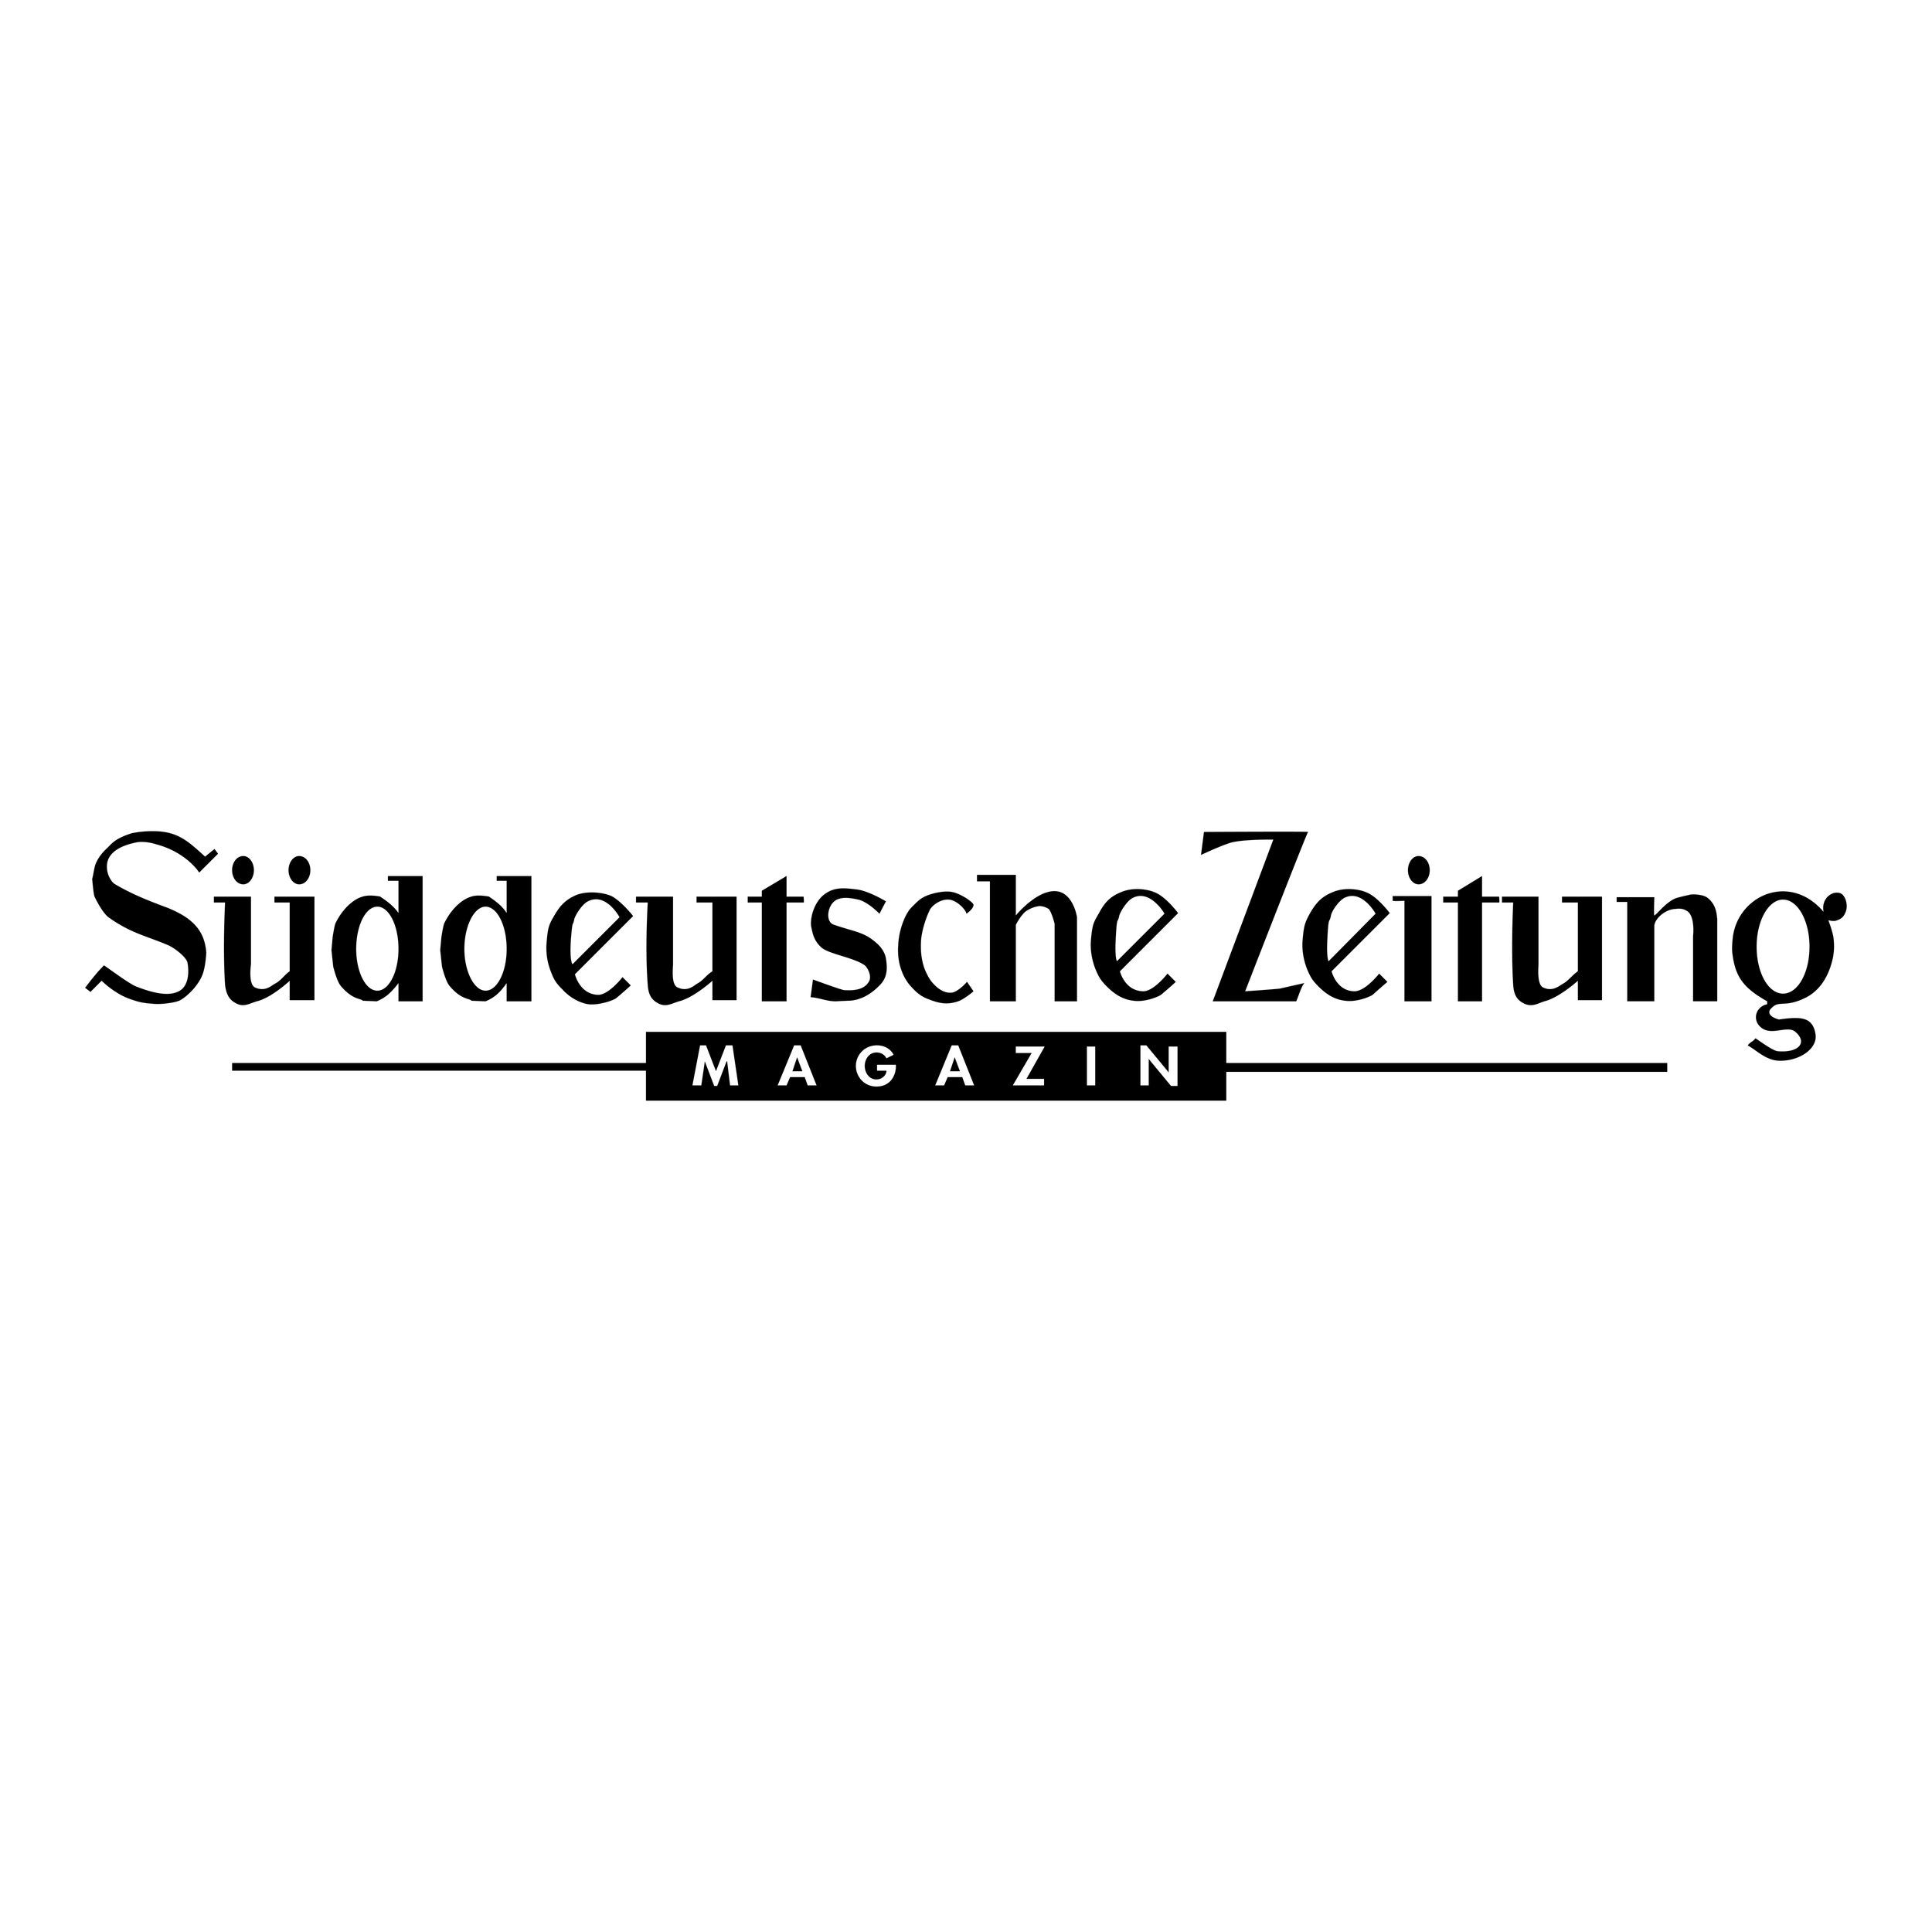 sueddeutsche-zeitung-magazin copy.jpg